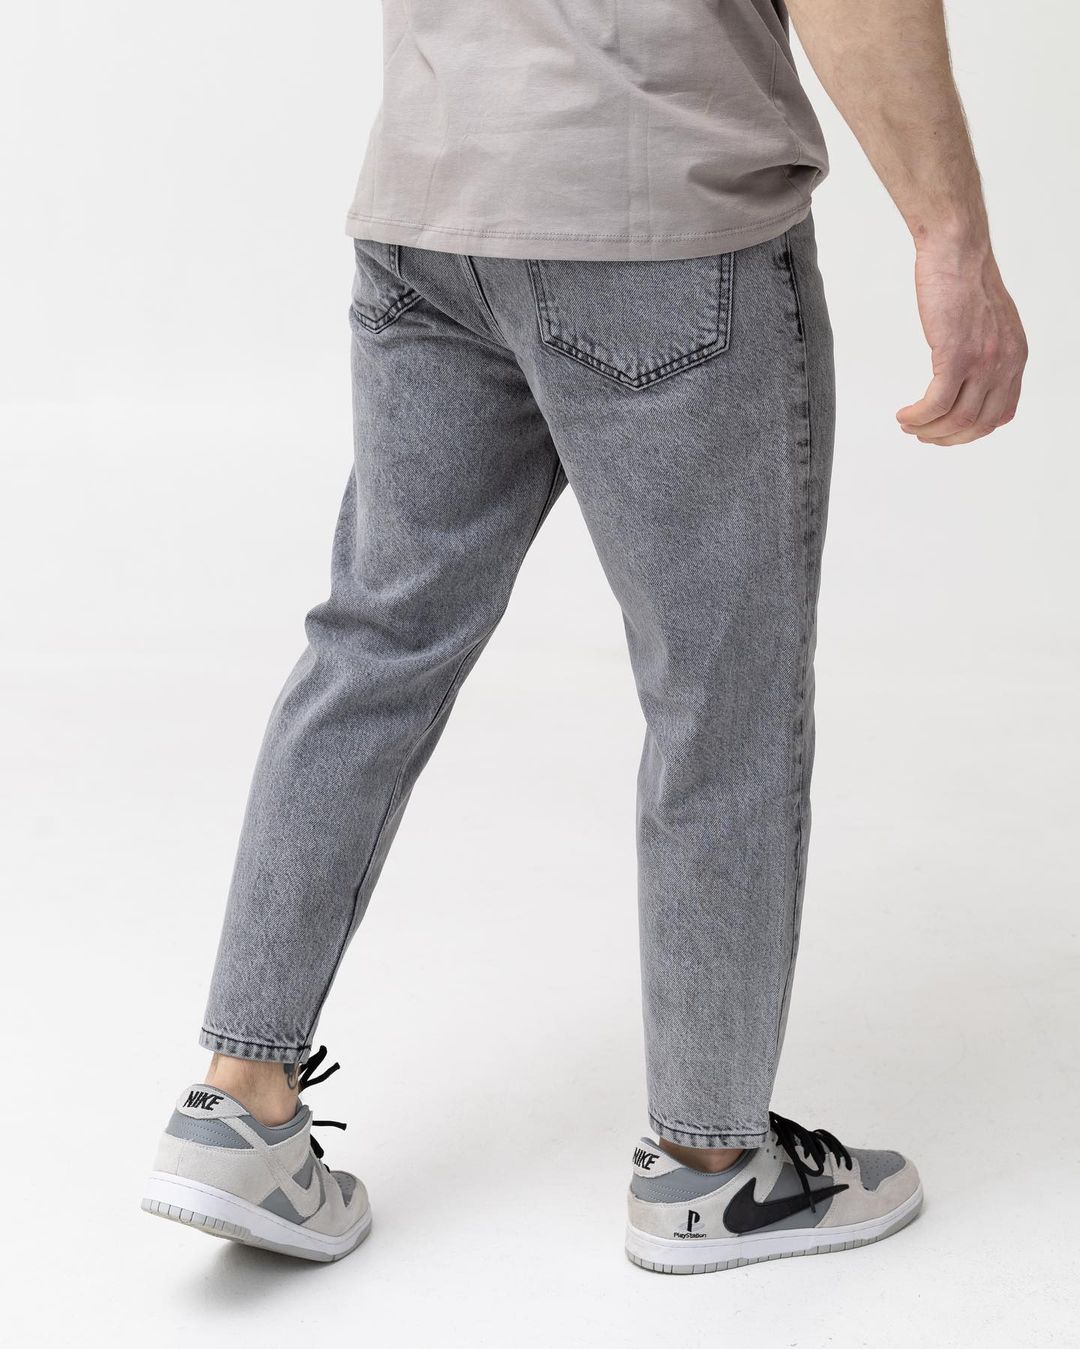 Чоловічі сірі джинси BEZET базові бойфренди - Фото 2